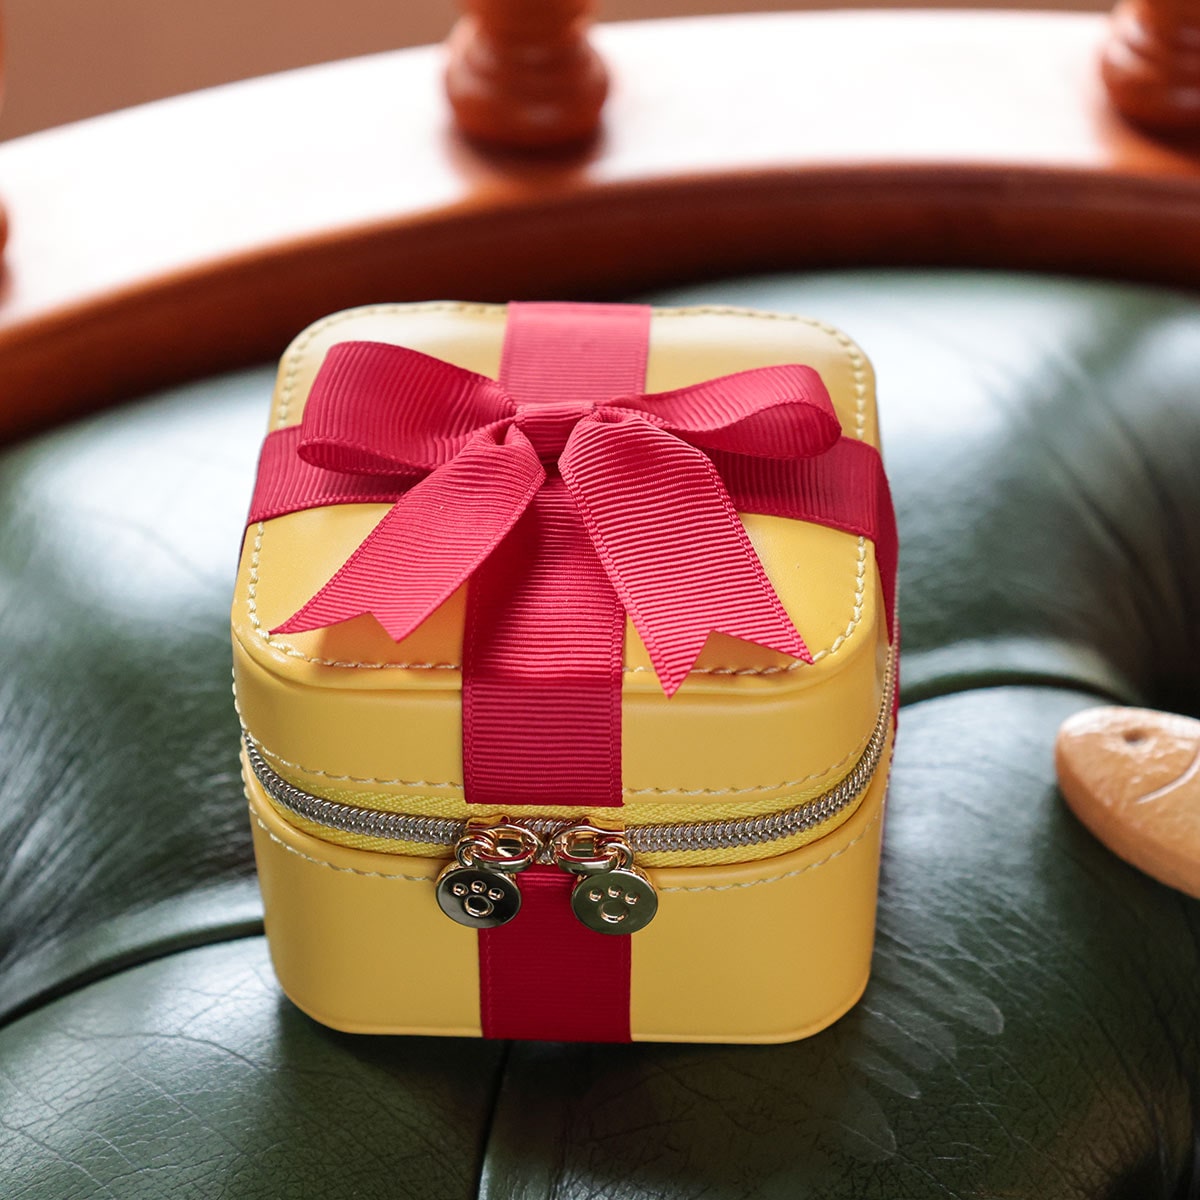 真愛日本 宮崎駿 吉卜力 貓的報恩 小魚餅乾禮盒 限定 造型收納包 飾品盒 小物包 收納包 零錢包 造型包